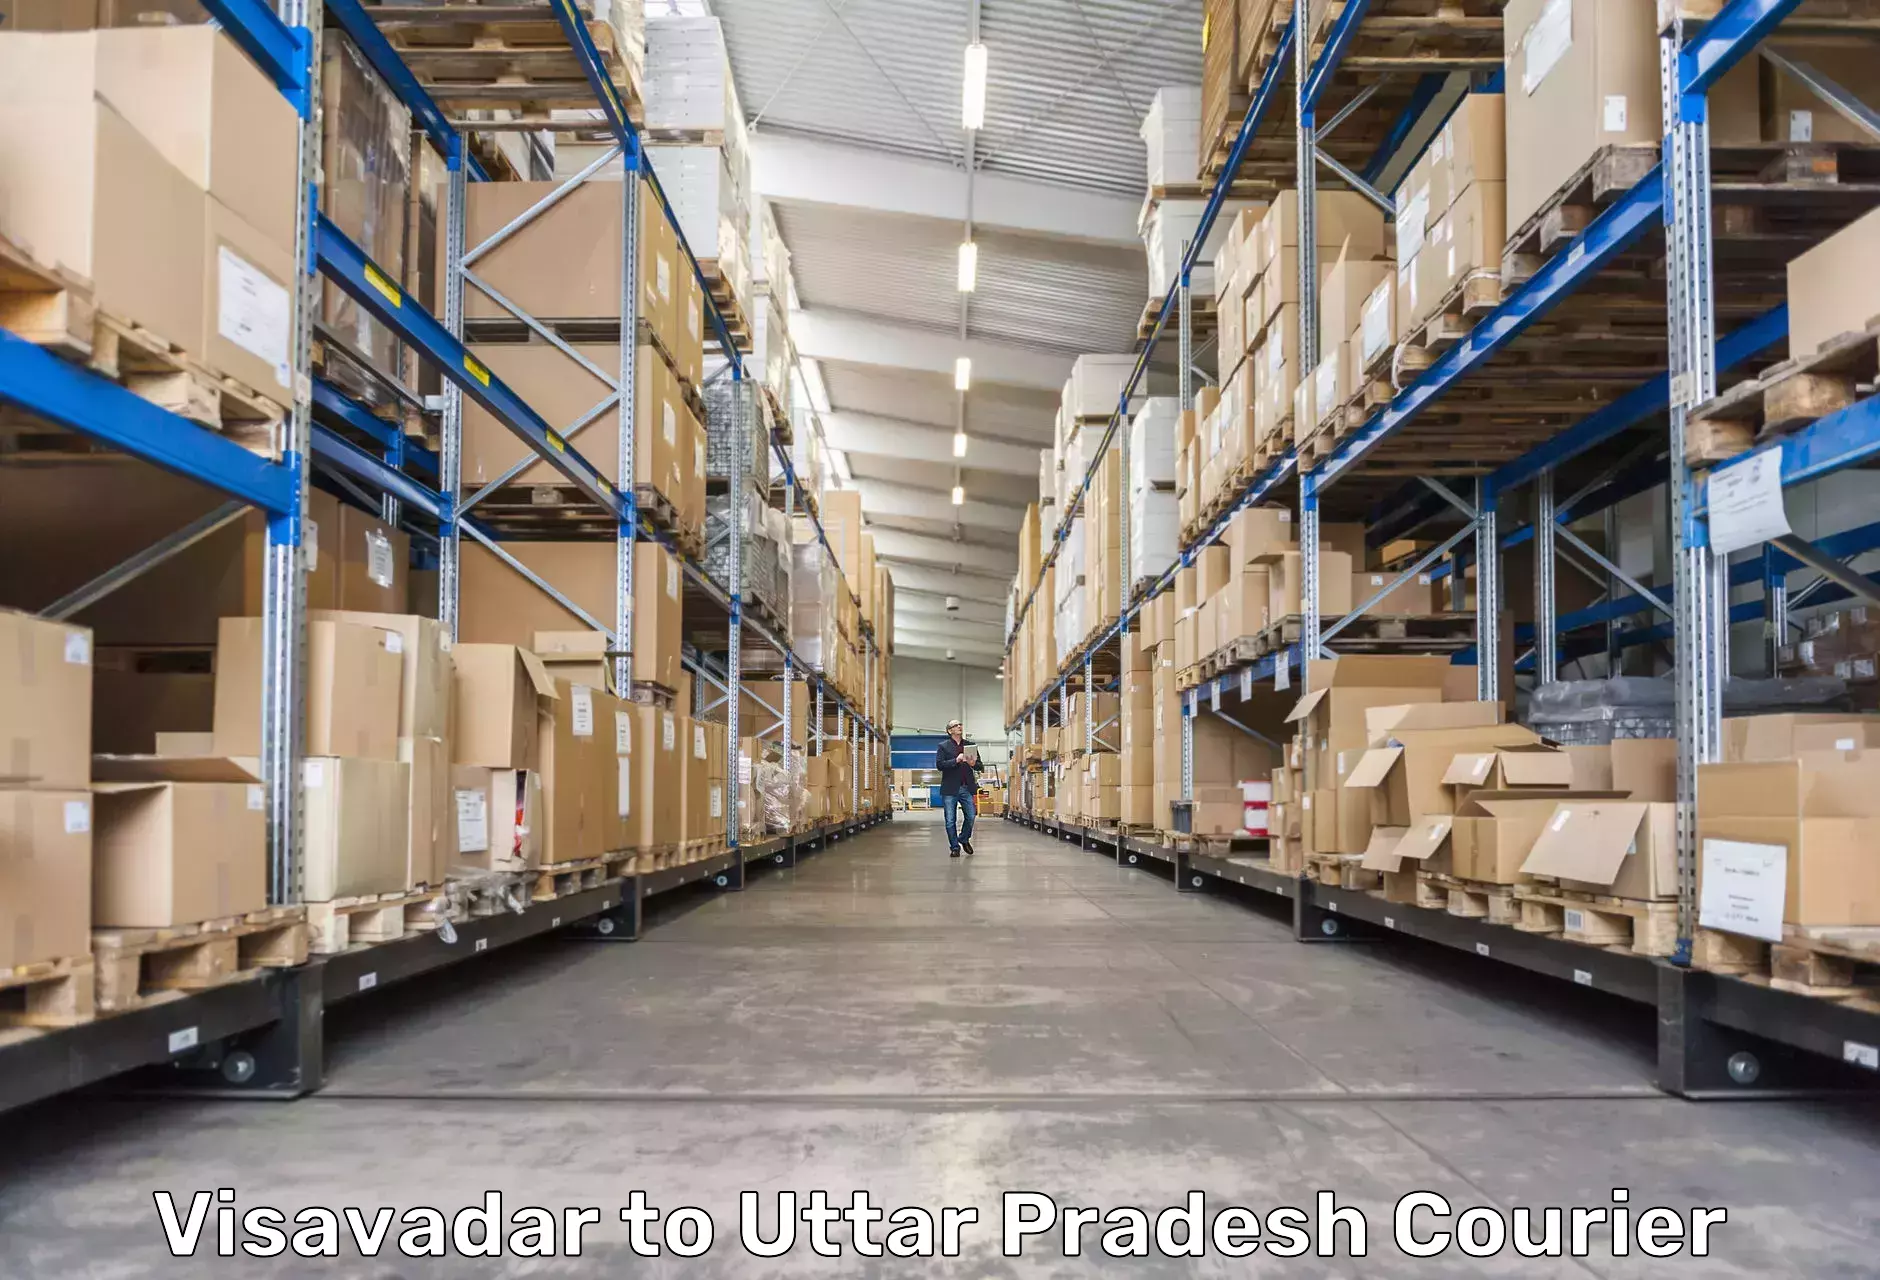 Efficient order fulfillment Visavadar to Banaras Hindu University Varanasi